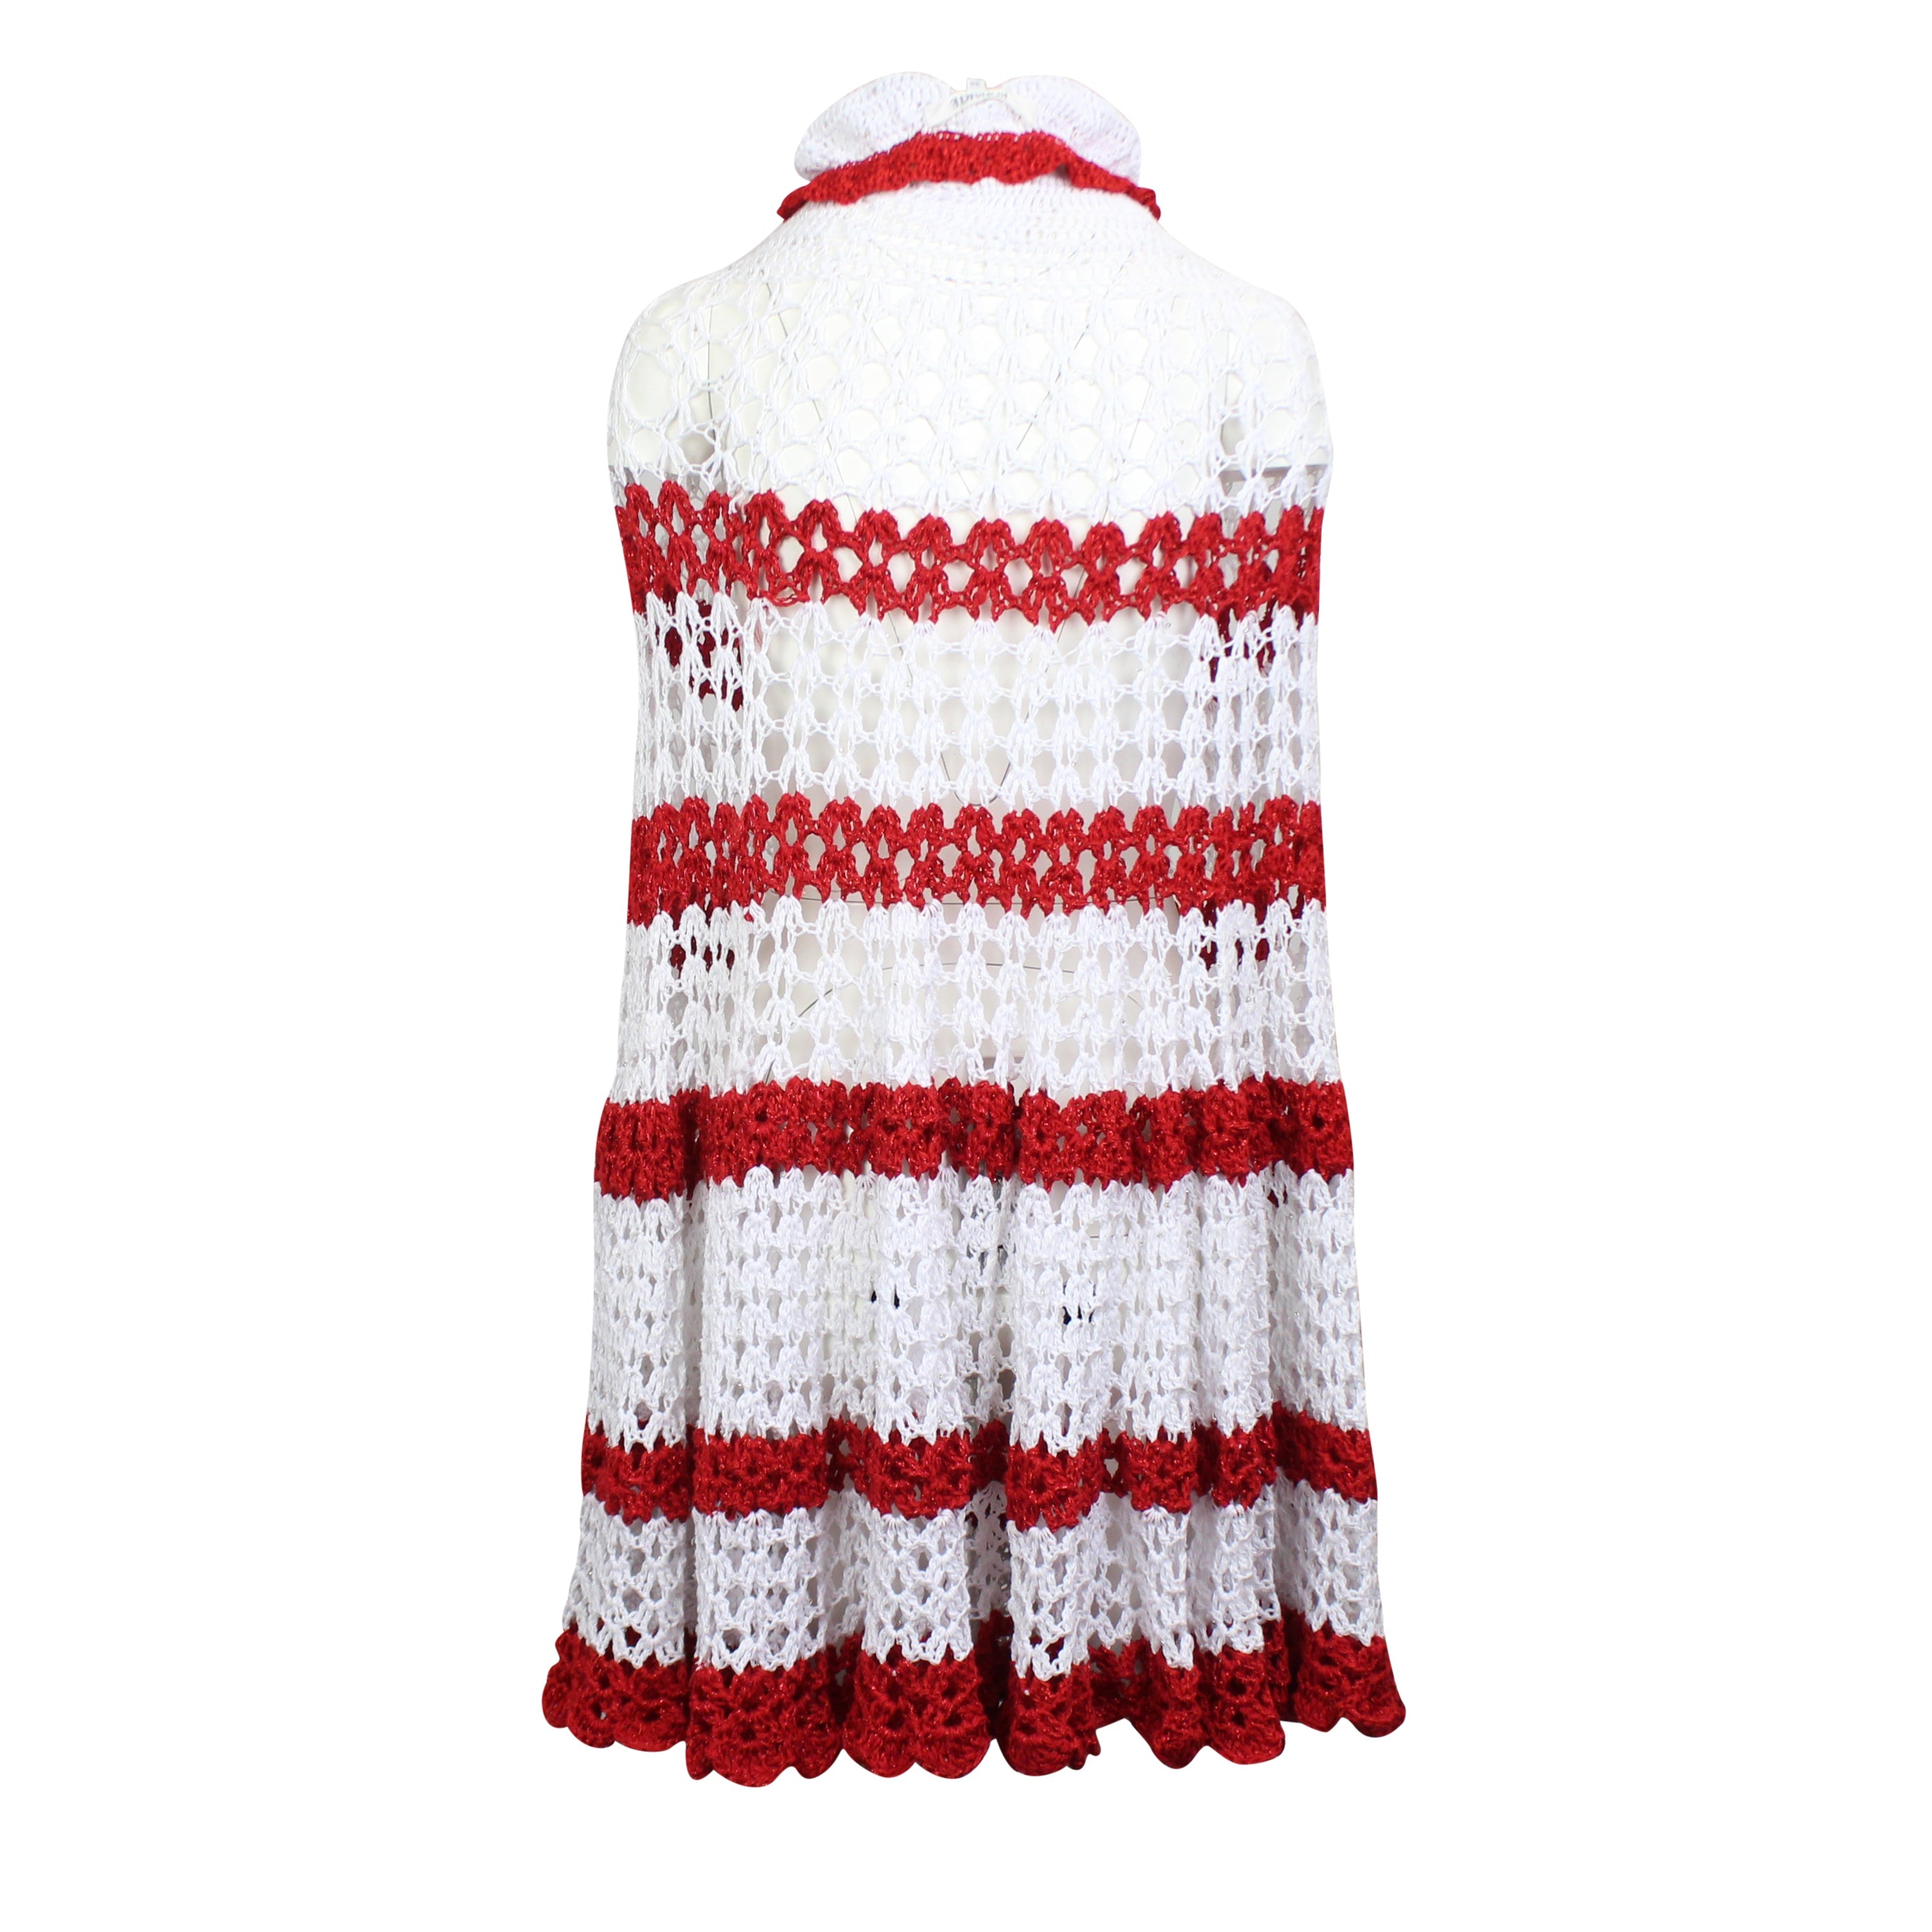 Rodarte Hand Crocheted Strapless Dress - Red/white